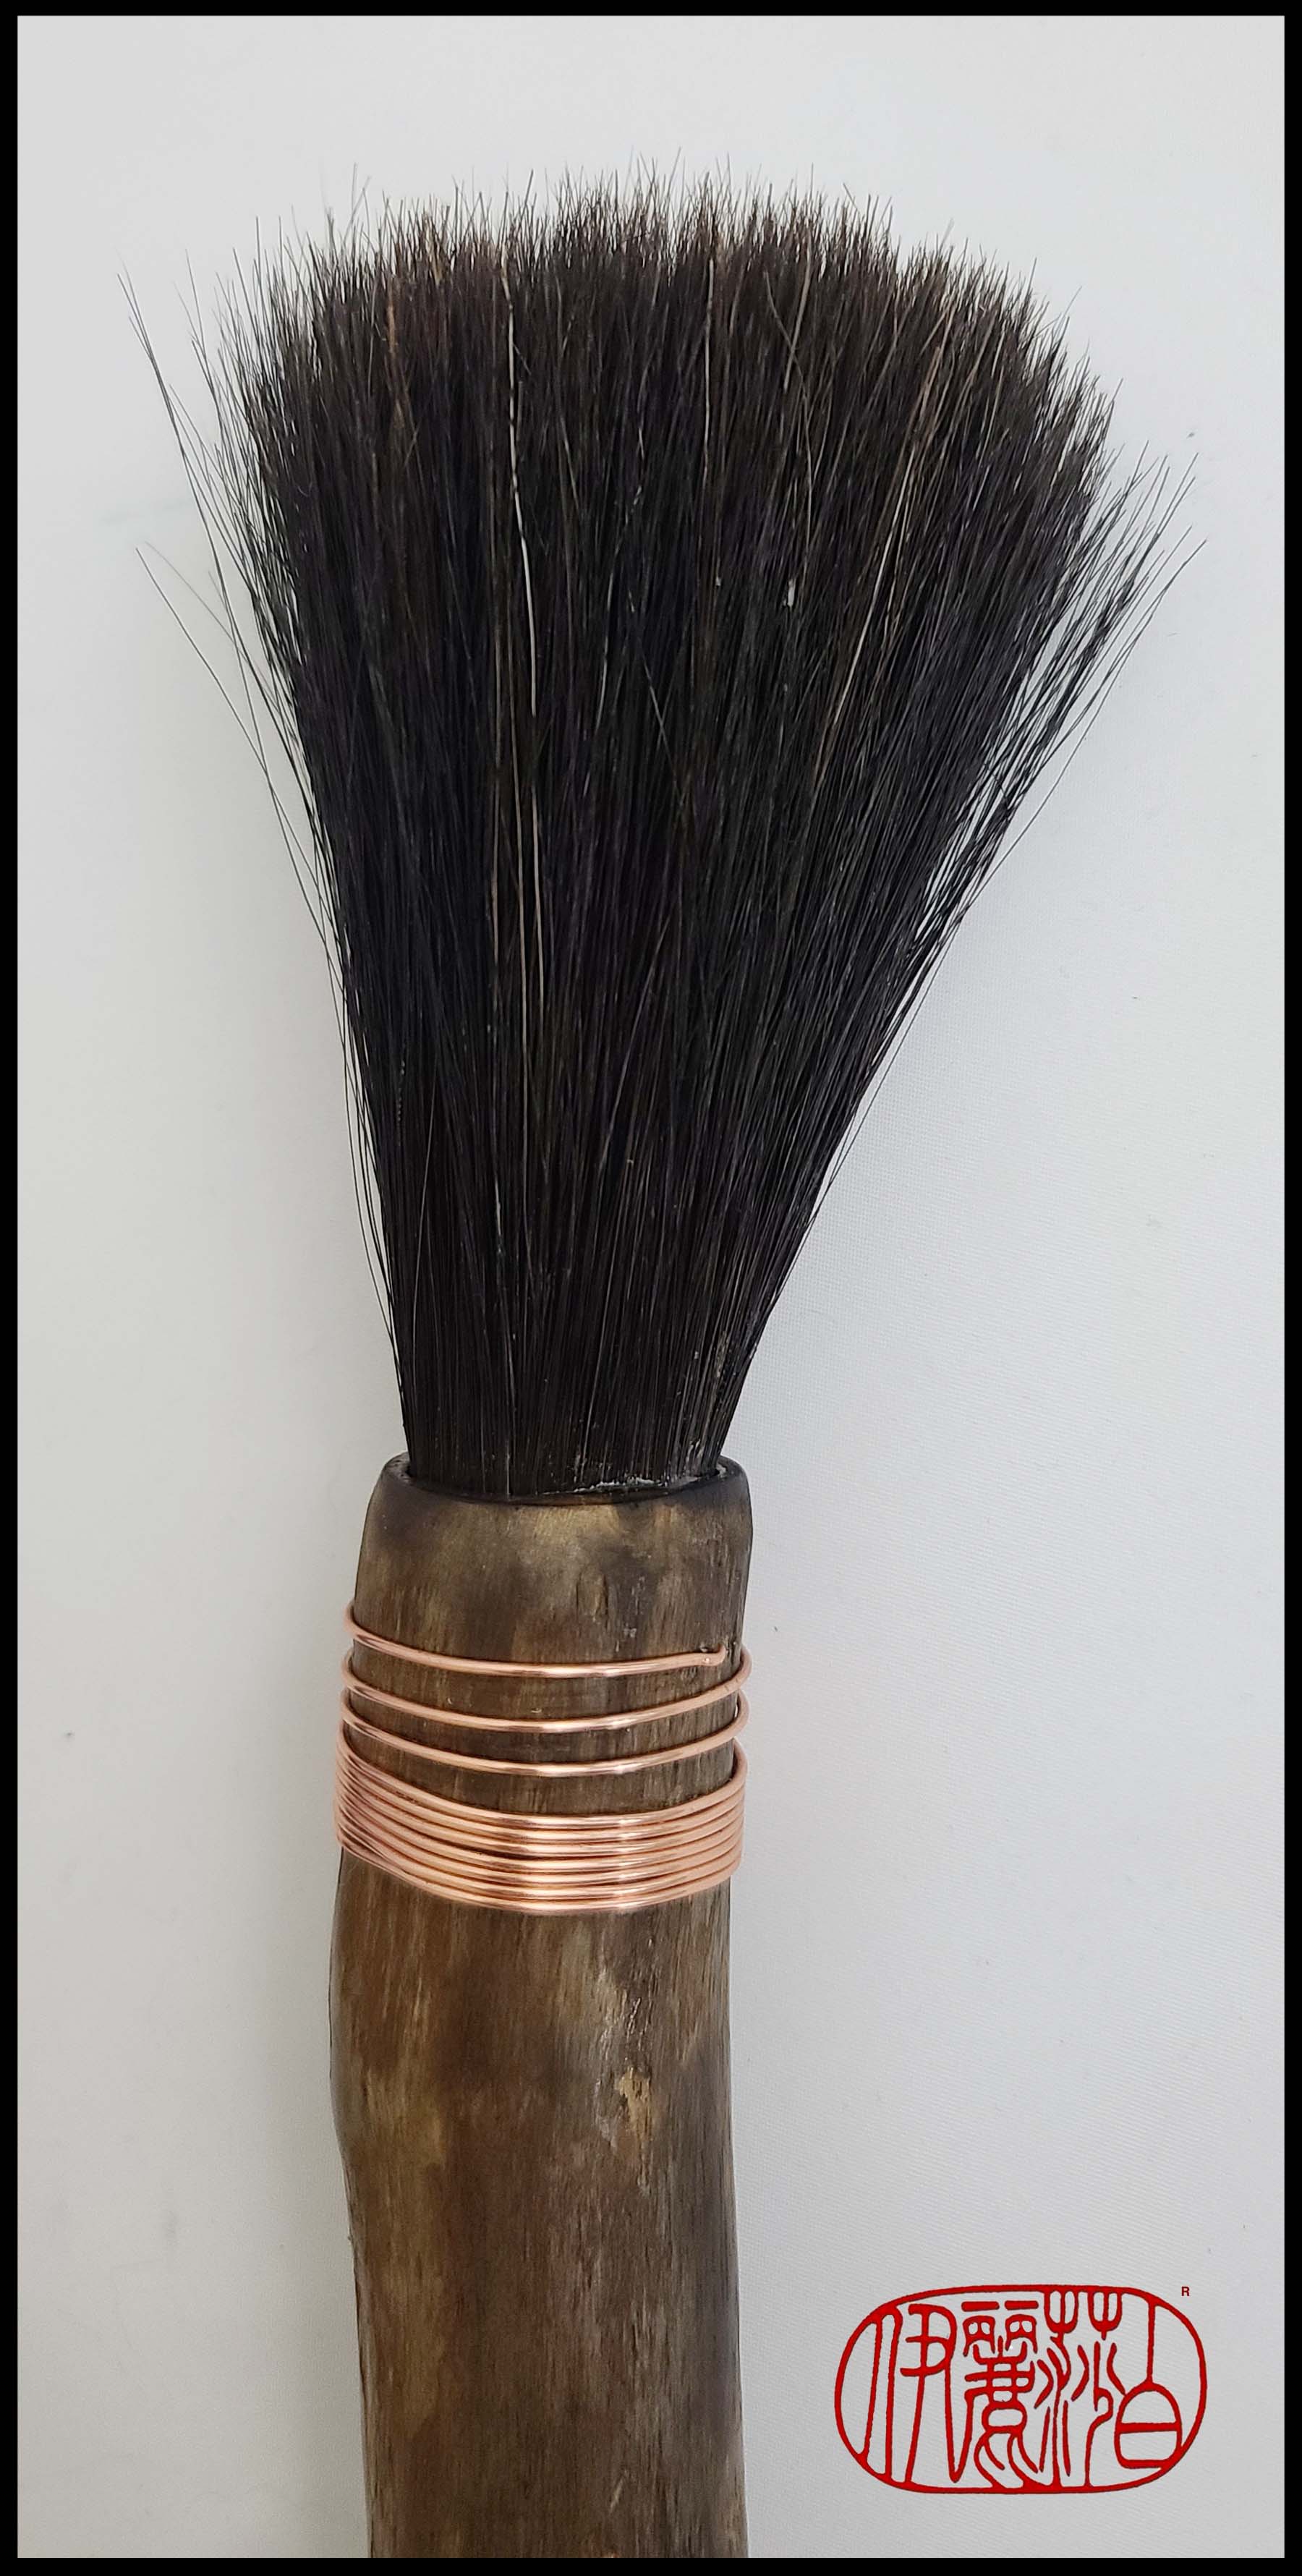 Black Horsehair Sumi-e Paint Brush with Driftwood Handle Art Supplies Elizabeth Schowachert Art